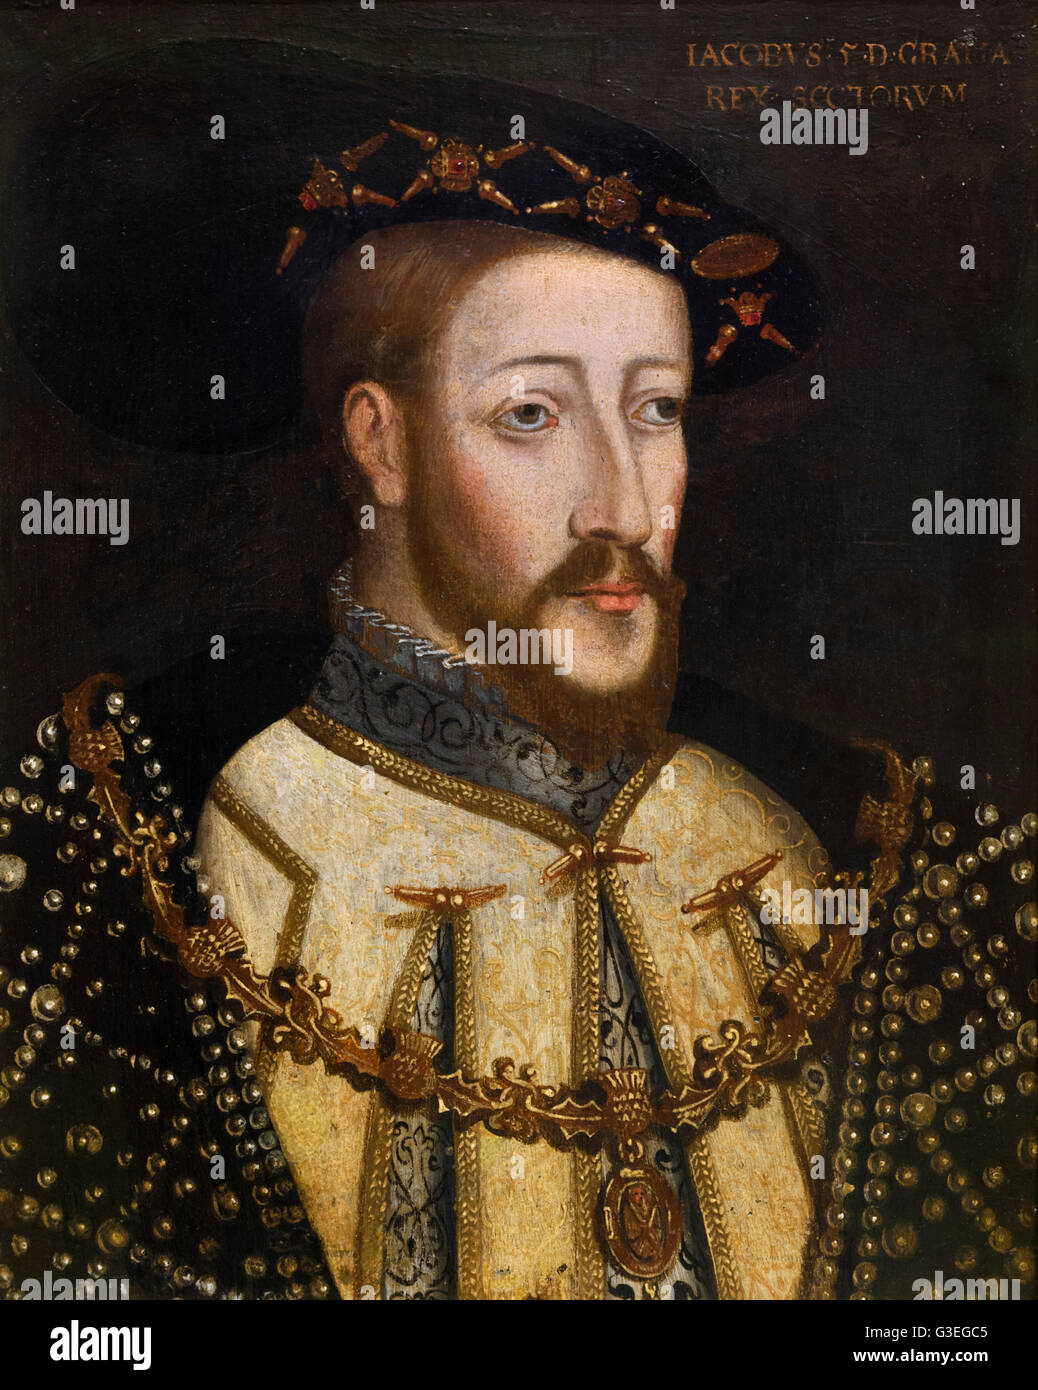 König James V. von Schottland (1512 - 1542). James V war der Vater von Maria, Königin von Schottland. Porträt von unbekannter Künstler, Öl auf Leinwand, c 1579. Stockfoto